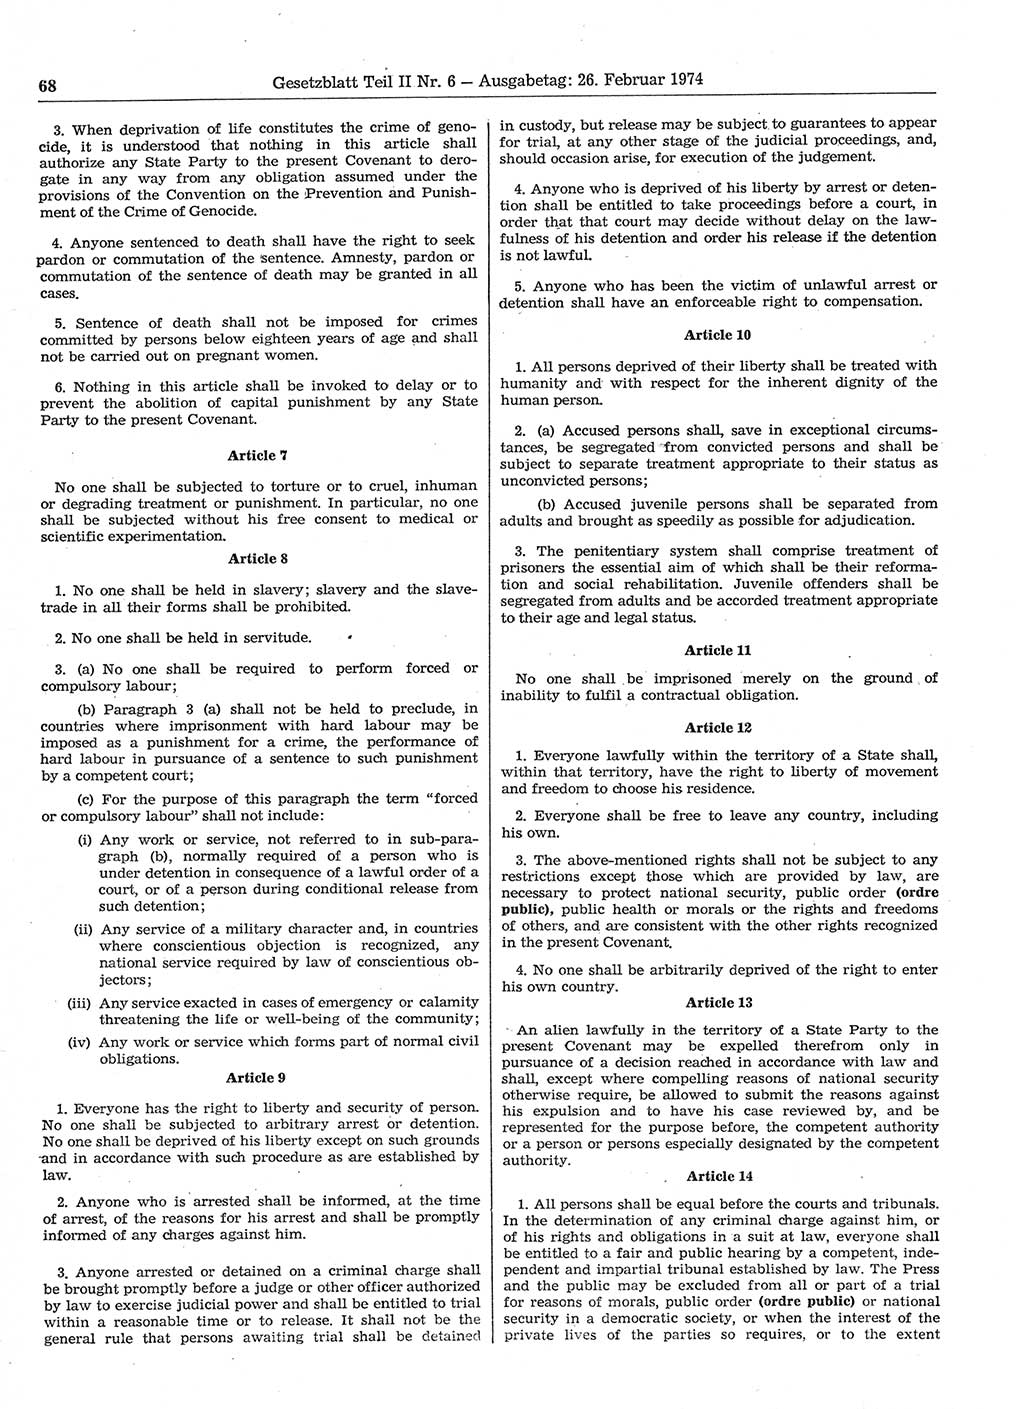 Gesetzblatt (GBl.) der Deutschen Demokratischen Republik (DDR) Teil ⅠⅠ 1974, Seite 68 (GBl. DDR ⅠⅠ 1974, S. 68)